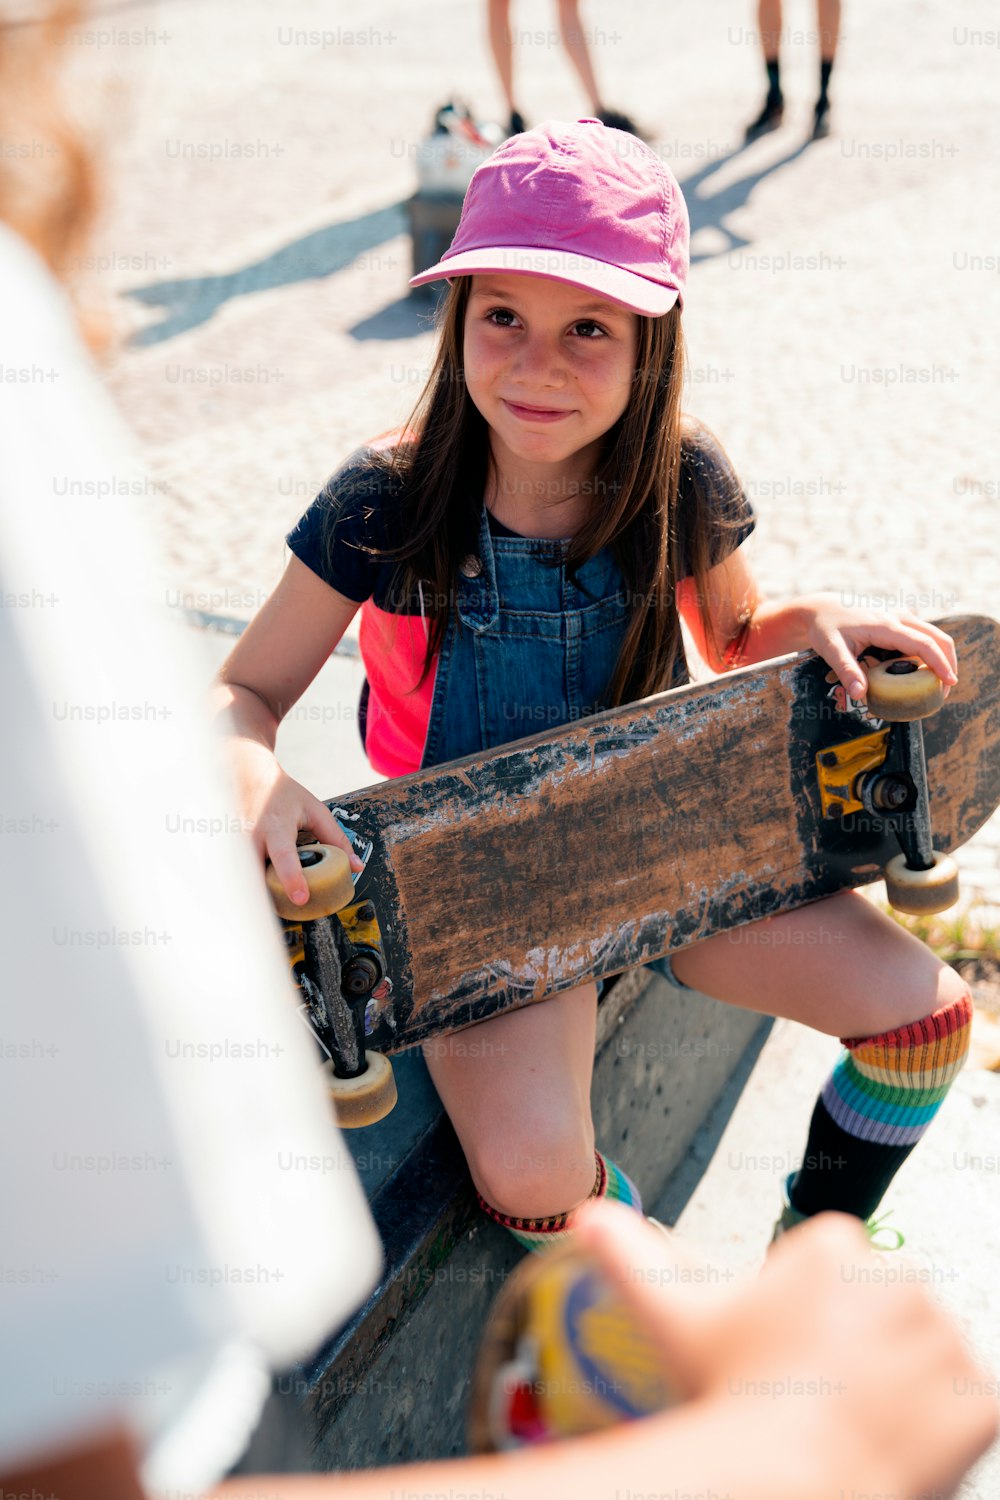 스케이트보드를 들고 벤치에 앉아 있는 어린 소녀